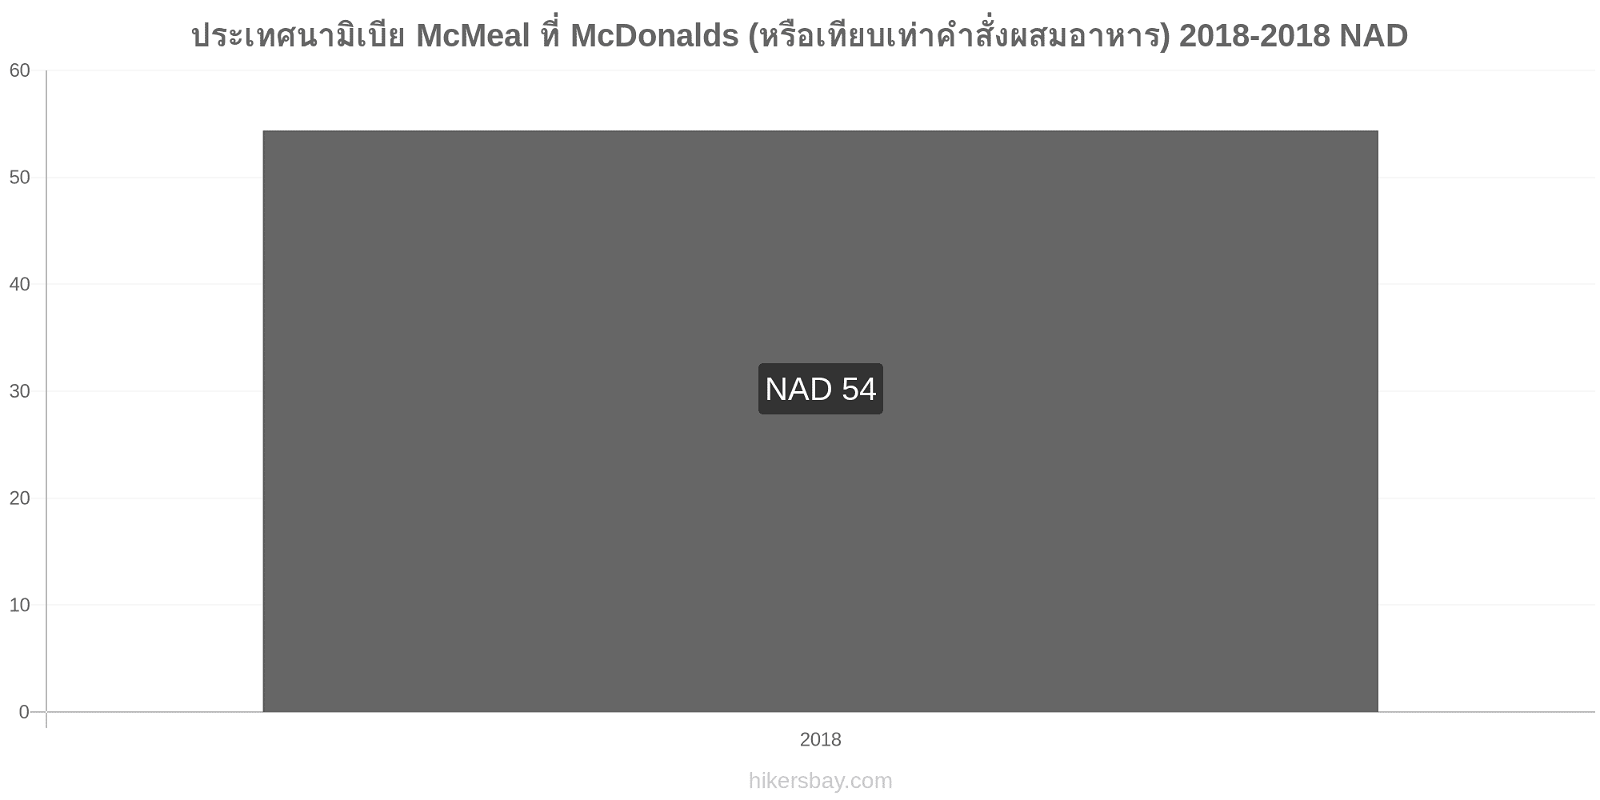 ประเทศนามิเบีย การเปลี่ยนแปลงราคา McMeal ที่ McDonalds (หรือเทียบเท่าคำสั่งผสมอาหาร) hikersbay.com